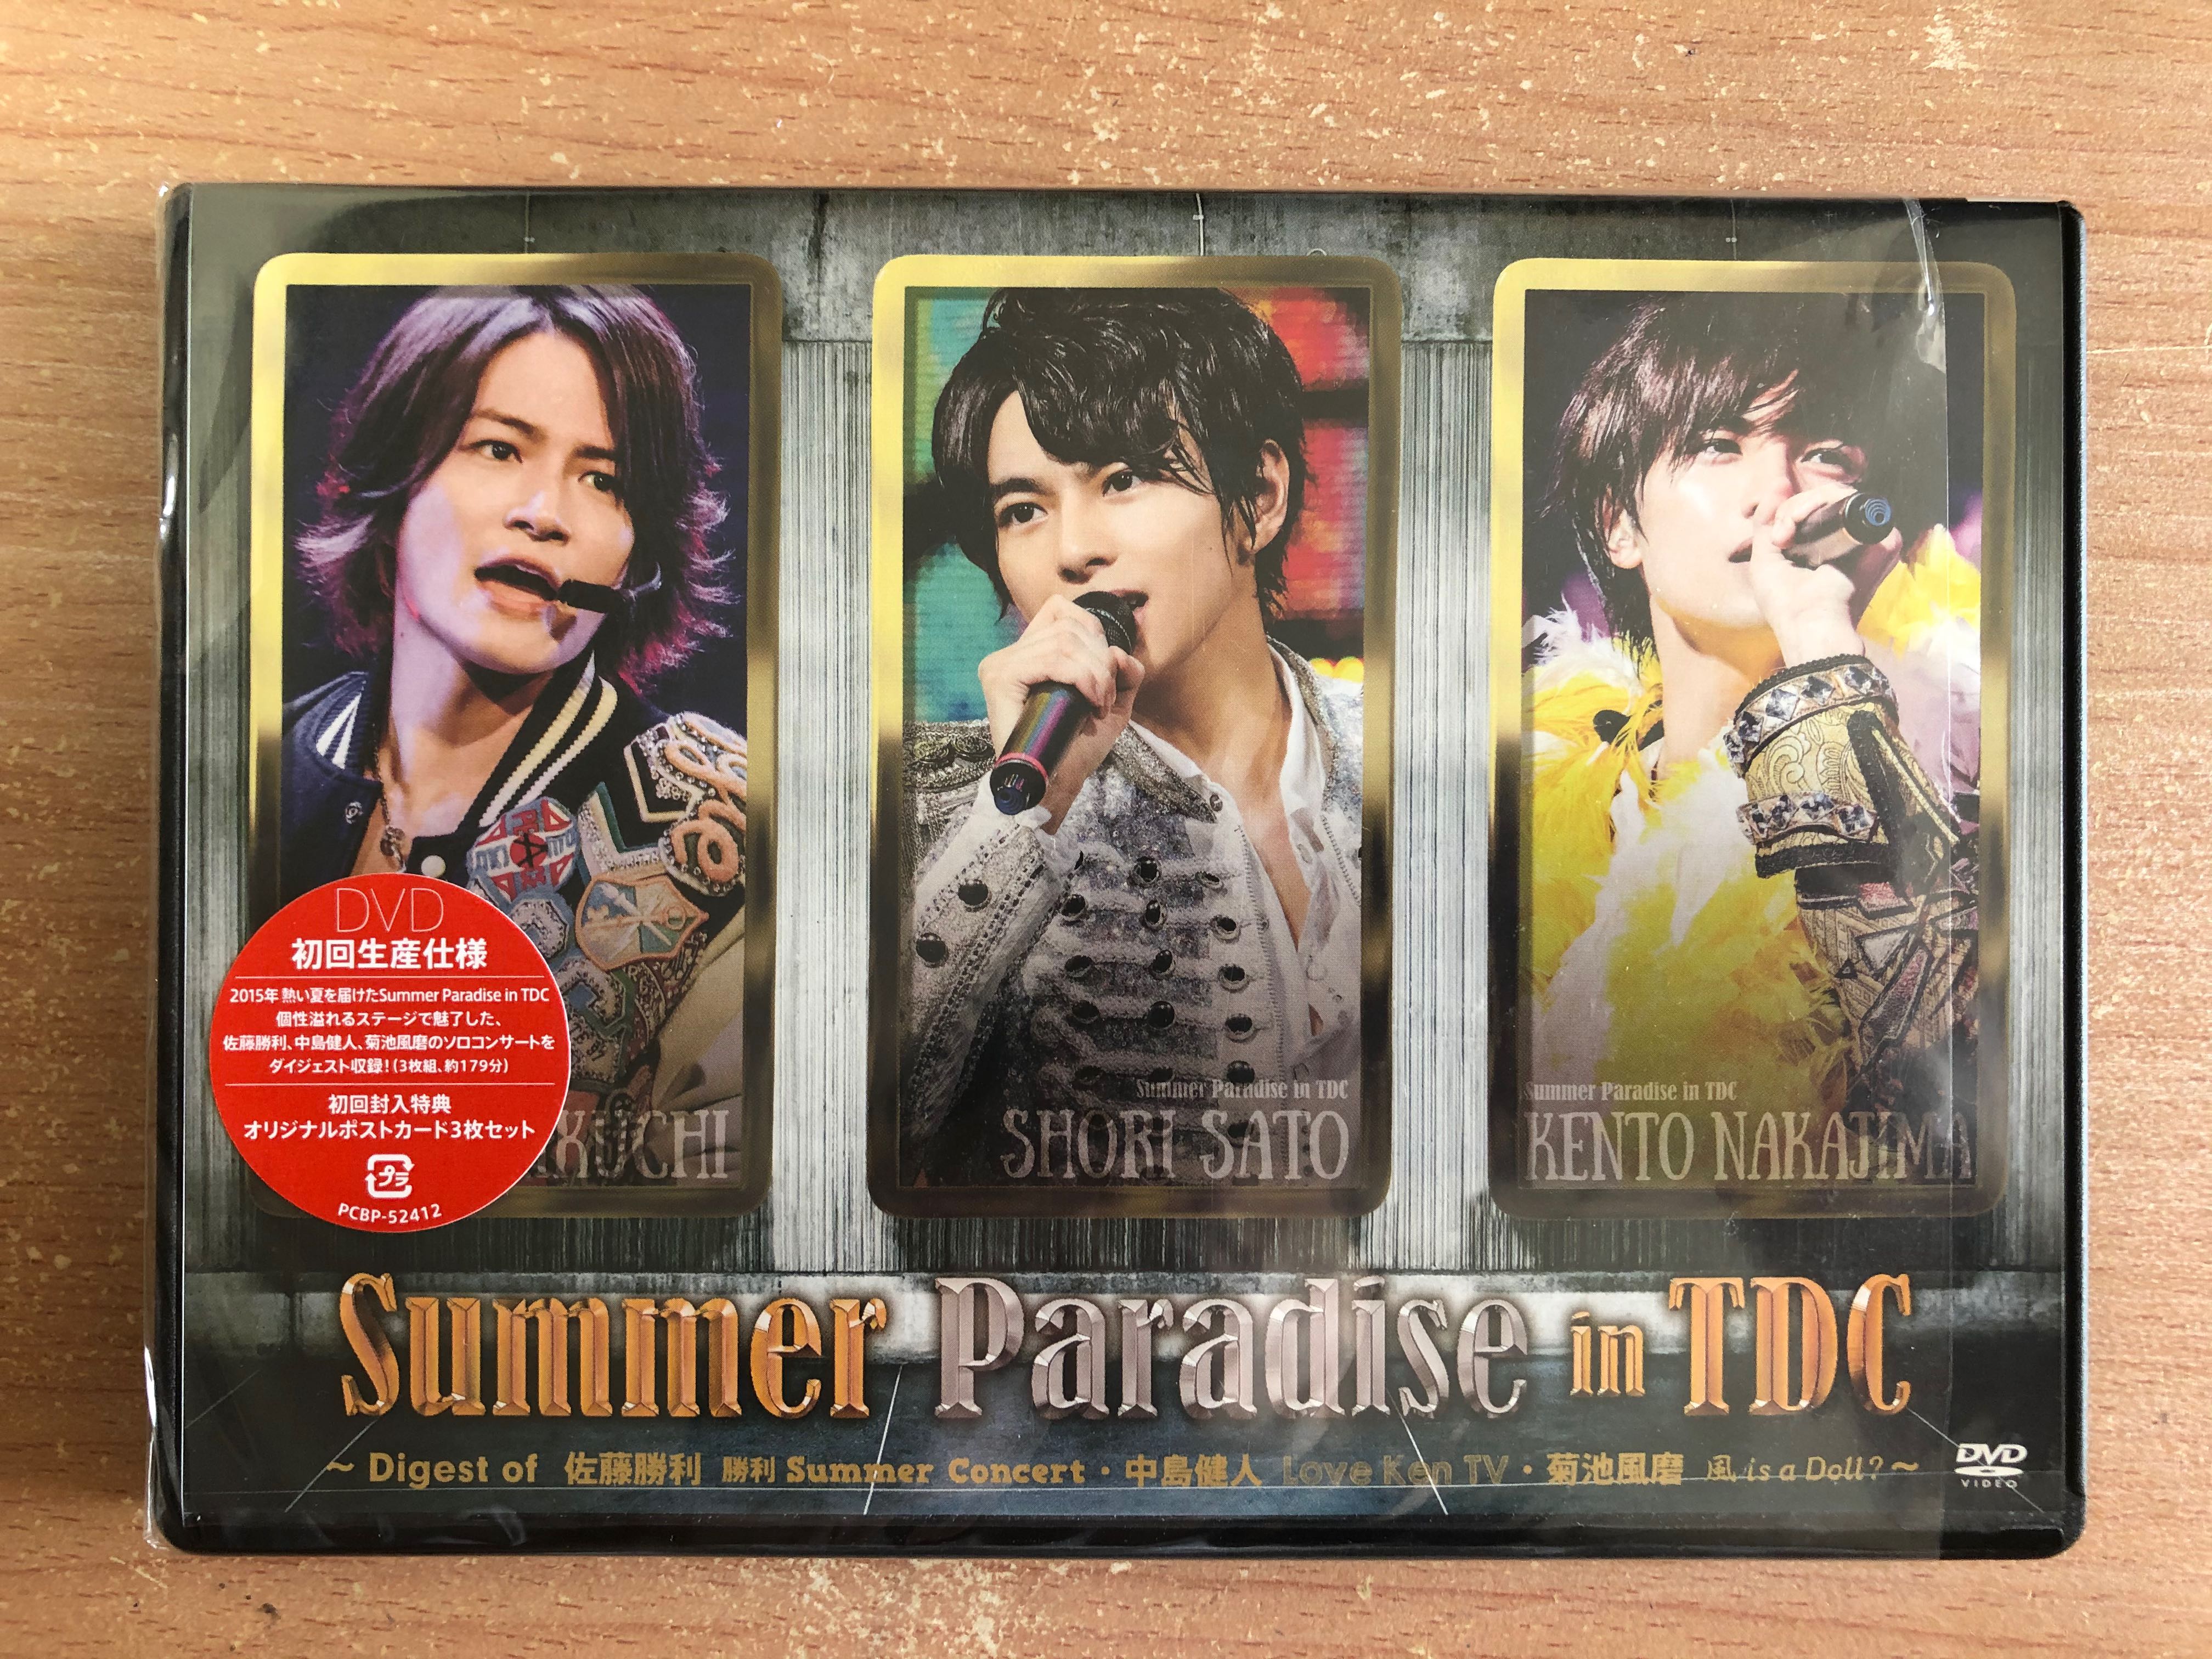 DVD/ブルーレイSummer Paradise TDC 2016 2017 DVD 3点セット - アイドル